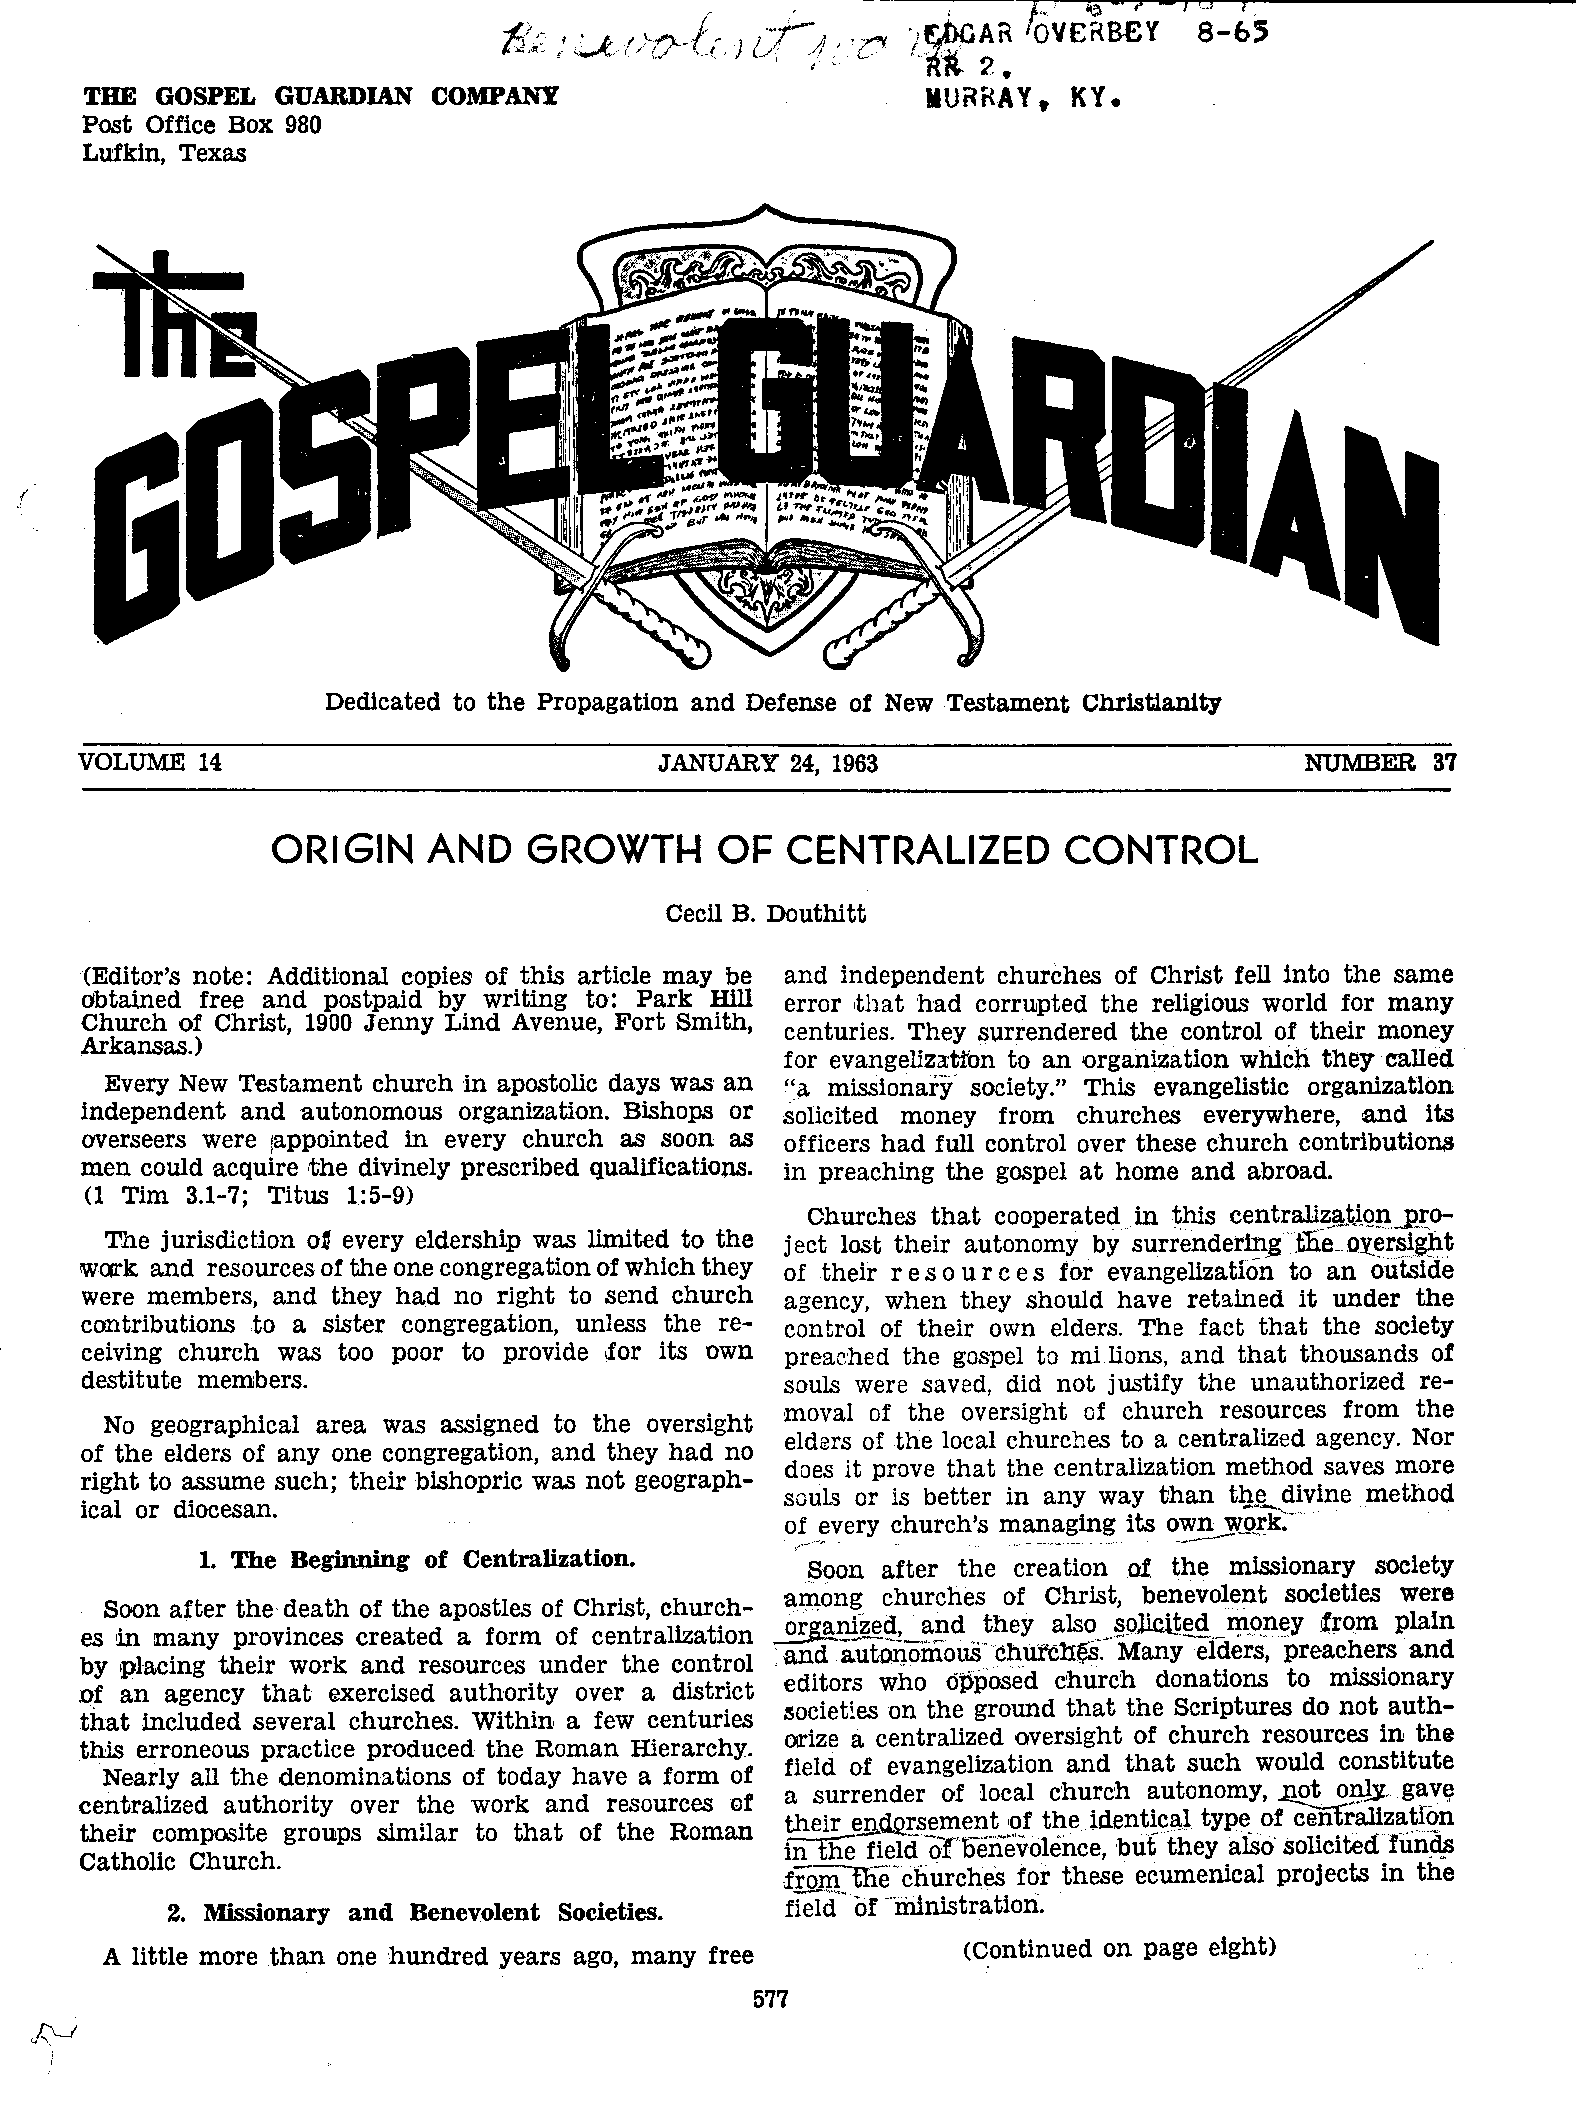 Gospel Guardian Original: Vol.14 No.37 Pg.1